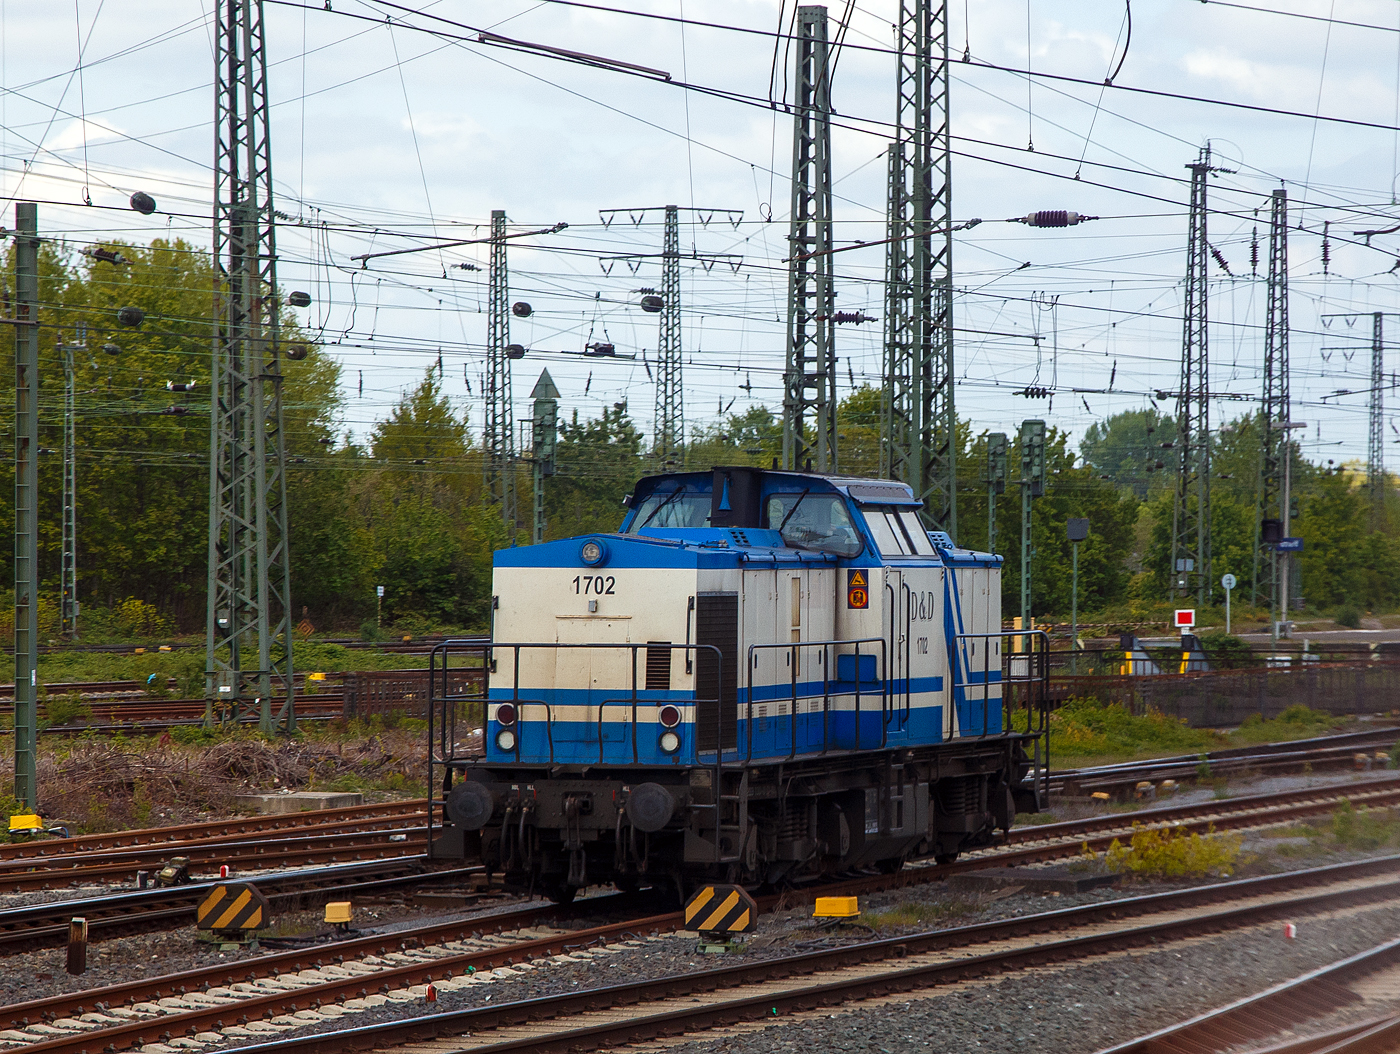 Die D&D 1702 bzw. 203 130-0 (92 80 1203 130-0 D-DUD) der D&D Eisenbahngesellschaft mbH (Hagenow), ex DB 202 602-9, ex DR 112 602-8, ex DR 110 602-0, steht am 30.04.2022 beim Bahnhof Hamm (Westf.). Aufnahme aus dem Zug heraus.

Die Diesellok eine DR V 100.1 wurde 1973 von LEW (VEB Lokomotivbau Elektrotechnische Werke „Hans Beimler“, Hennigsdorf) unter der Fabriknummer 13920 gebaut und als DR 110 602-0 an die Deutsche Reichsbahn ausgeliefert. 1984 erfolgte bereits eine Remotorisierung/Umbau im Bw Meiningen und die Umzeichnung in DR 112 602-8. Zum 01.01.1992 erfolgte die Umzeichnung in DR 202 602-9 und zum 01.01.1994 dann DB AG. Die Ausmusterung bei der DB erfolgte 1999. Im Jahre 1998 ging sie an die SFZ - Schienenfahrzeugzentrum Stendal. Von der ALS - ALSTOM Lokomotiven Service GmbH in Stendal erfolgte dann 2002 der Umbau gemäß Umbaukonzept  BR 203.1  in die heutige 203 130-0. Im Jahr  2007 wurde sie an die D&D Eisenbahngesellschaft mbH (Hagenow) verkauft.